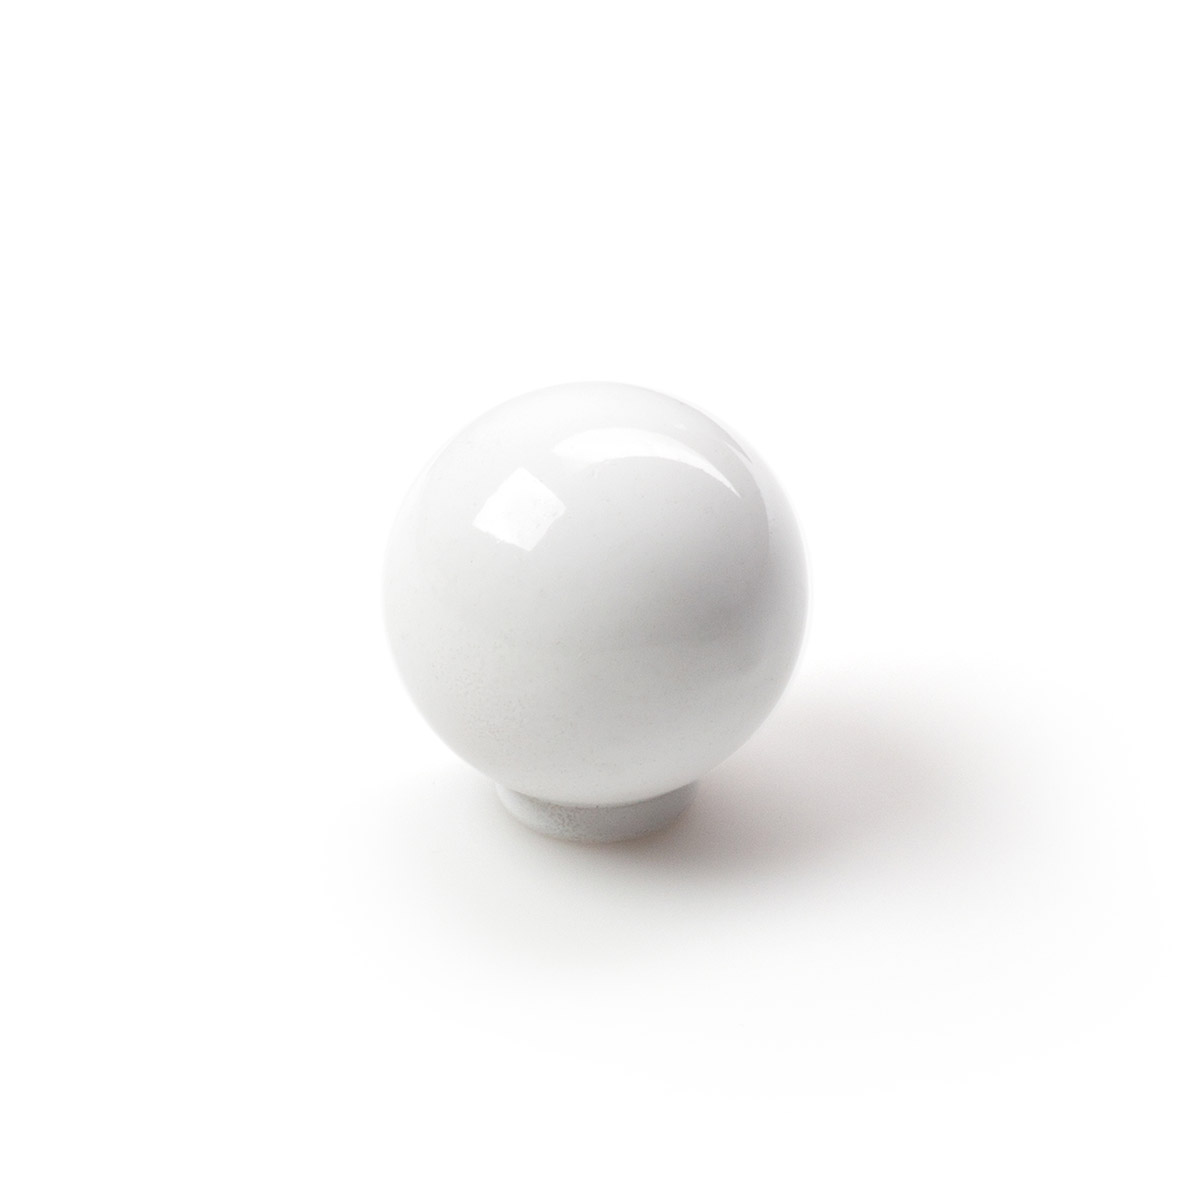 Bouton en plastique finition blanche, dimensions: 25x25x26mm Ø: 25mm